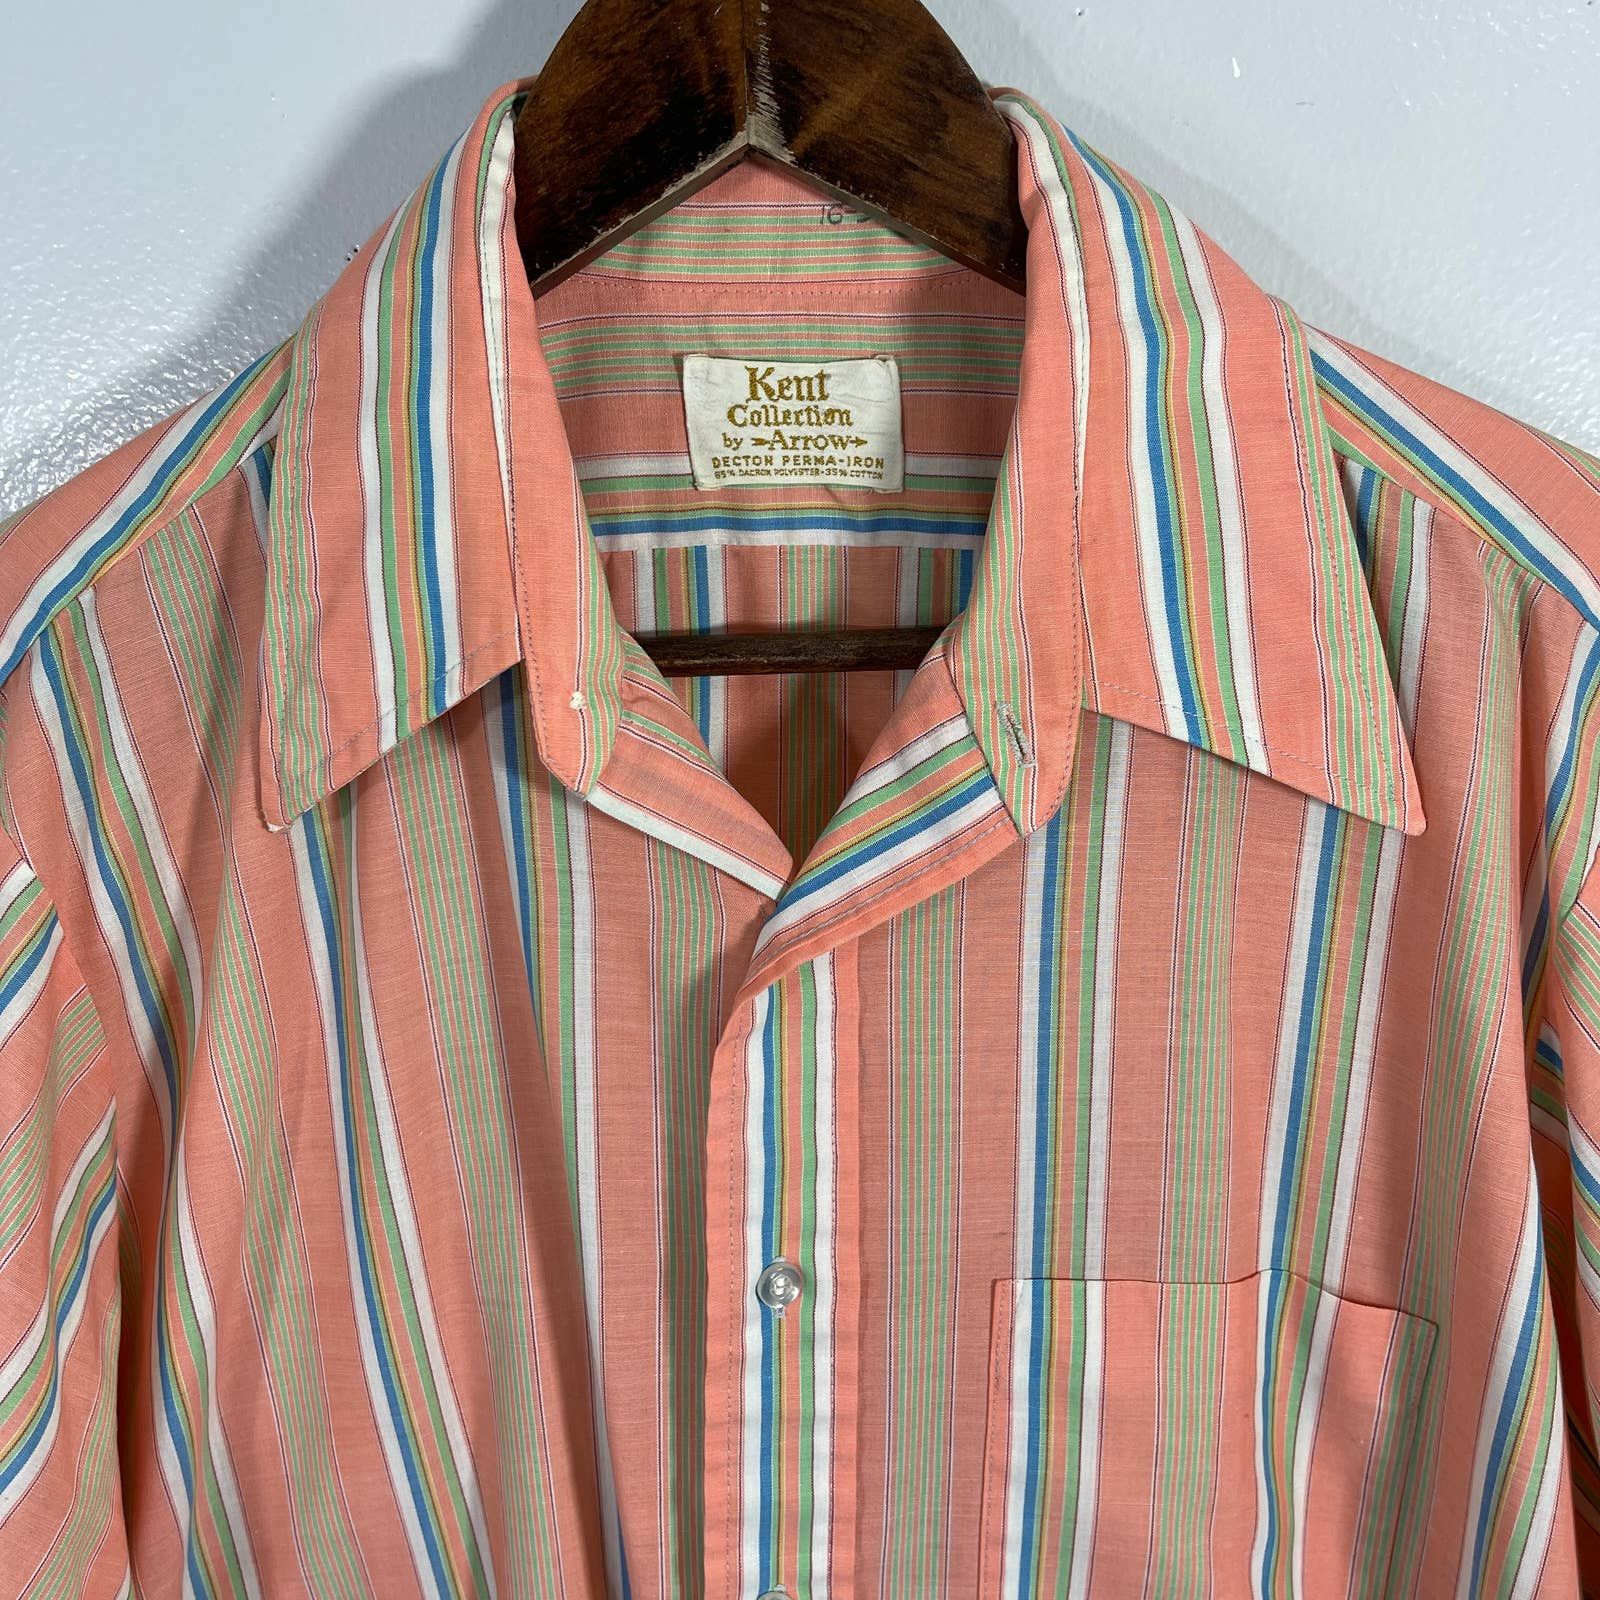 Vintage VINTAGE 1970s Vertical Striped Camp Button Shirt Size US XL / EU 56 / 4 - 5 Thumbnail